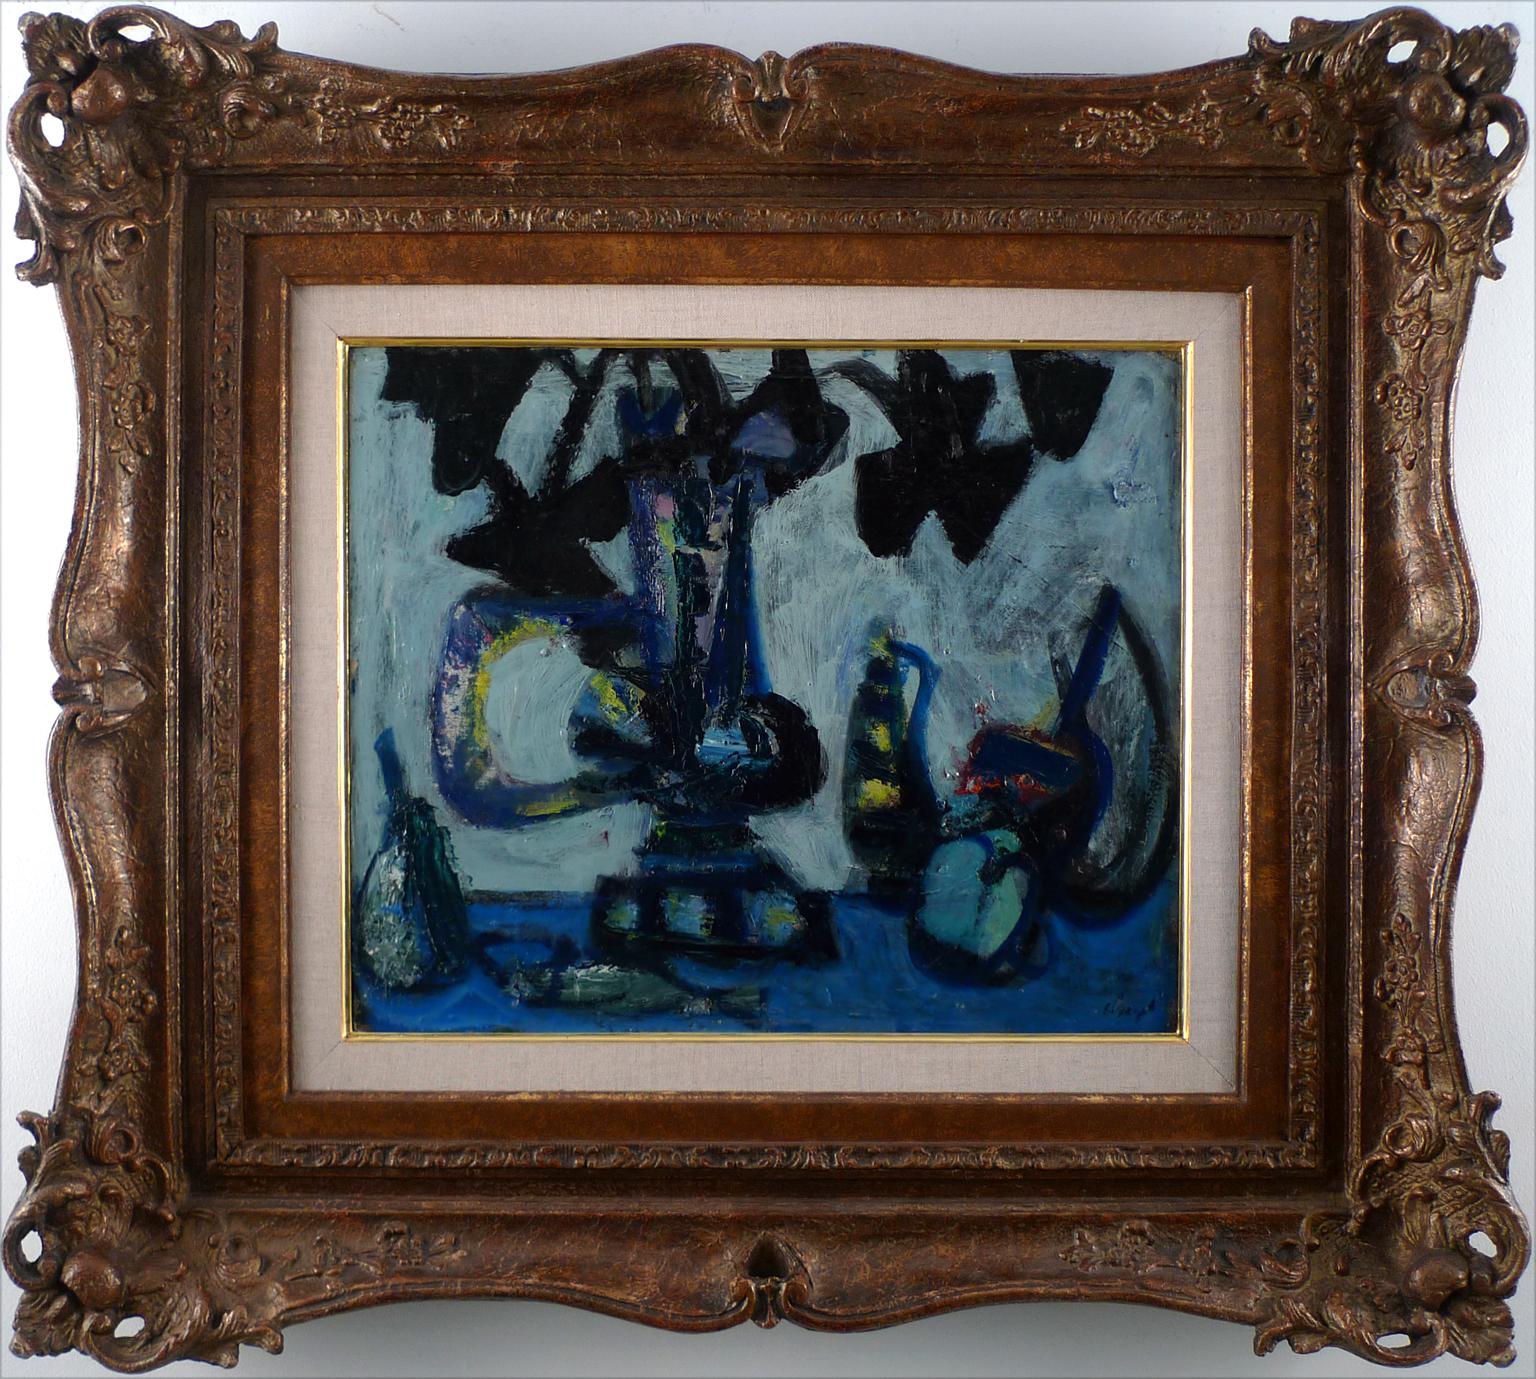 ANTONI CLAVÉ
Spanisch, 1913 - 2005
STILLLEBEN
signiert "Clavé" unten rechts
rückseitig mit der Aufschrift "Ce tableau a ete peint par moi vers 1946, Clavé" versehen
Öl auf Leinwand auf Künstlerkarton geklebt
15 x 18 Zoll (38 x 46 cm.)
Gerahmt: